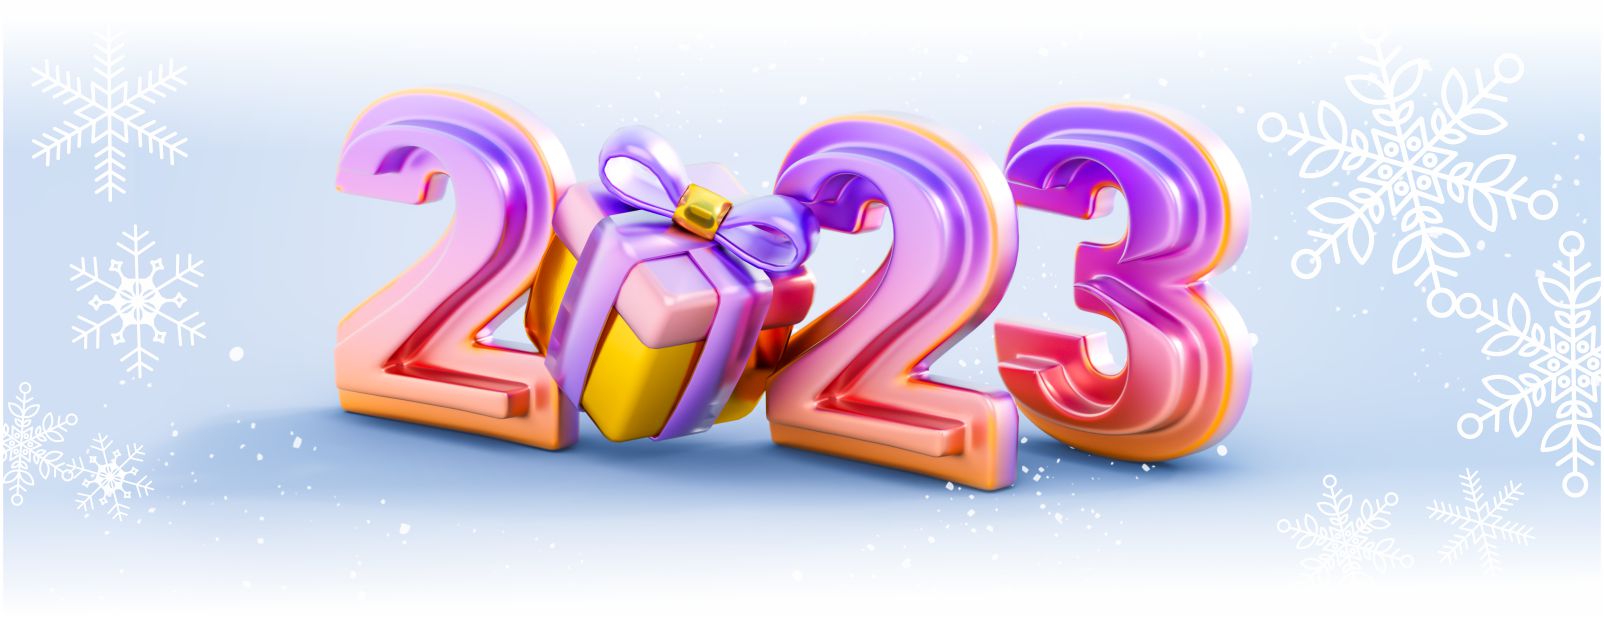 Вебинар компании Fucoidan World «72 часа до Нового Года!» Ведущие: руководство компании